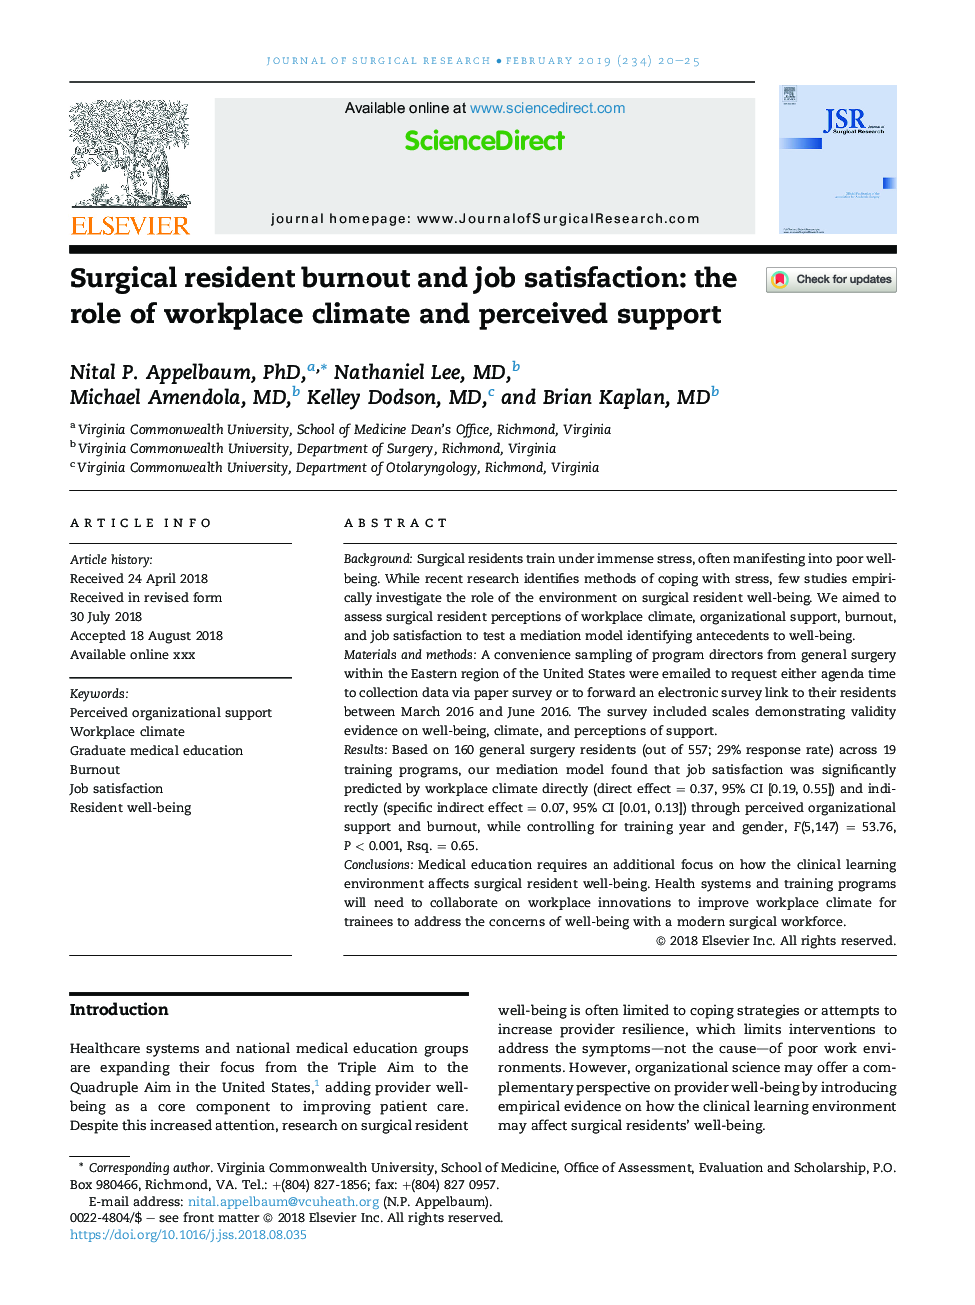 فرسودگی جسمانی و رضایت شغلی: نقش آب و هوای محیط کار و حمایت درک شده